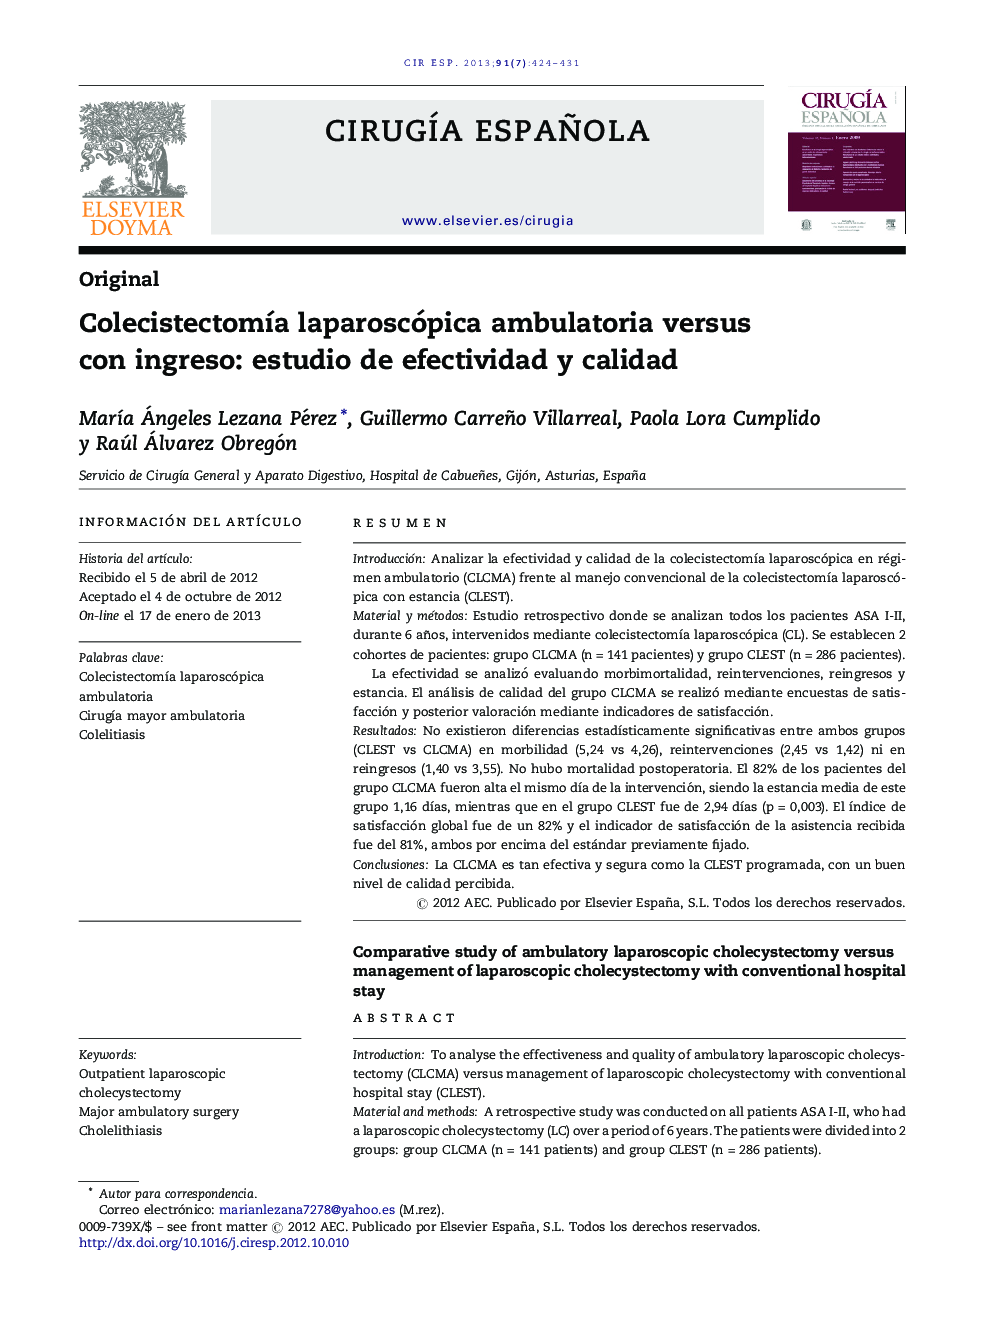 ColecistectomÃ­a laparoscópica ambulatoria versus con ingreso: estudio de efectividad y calidad